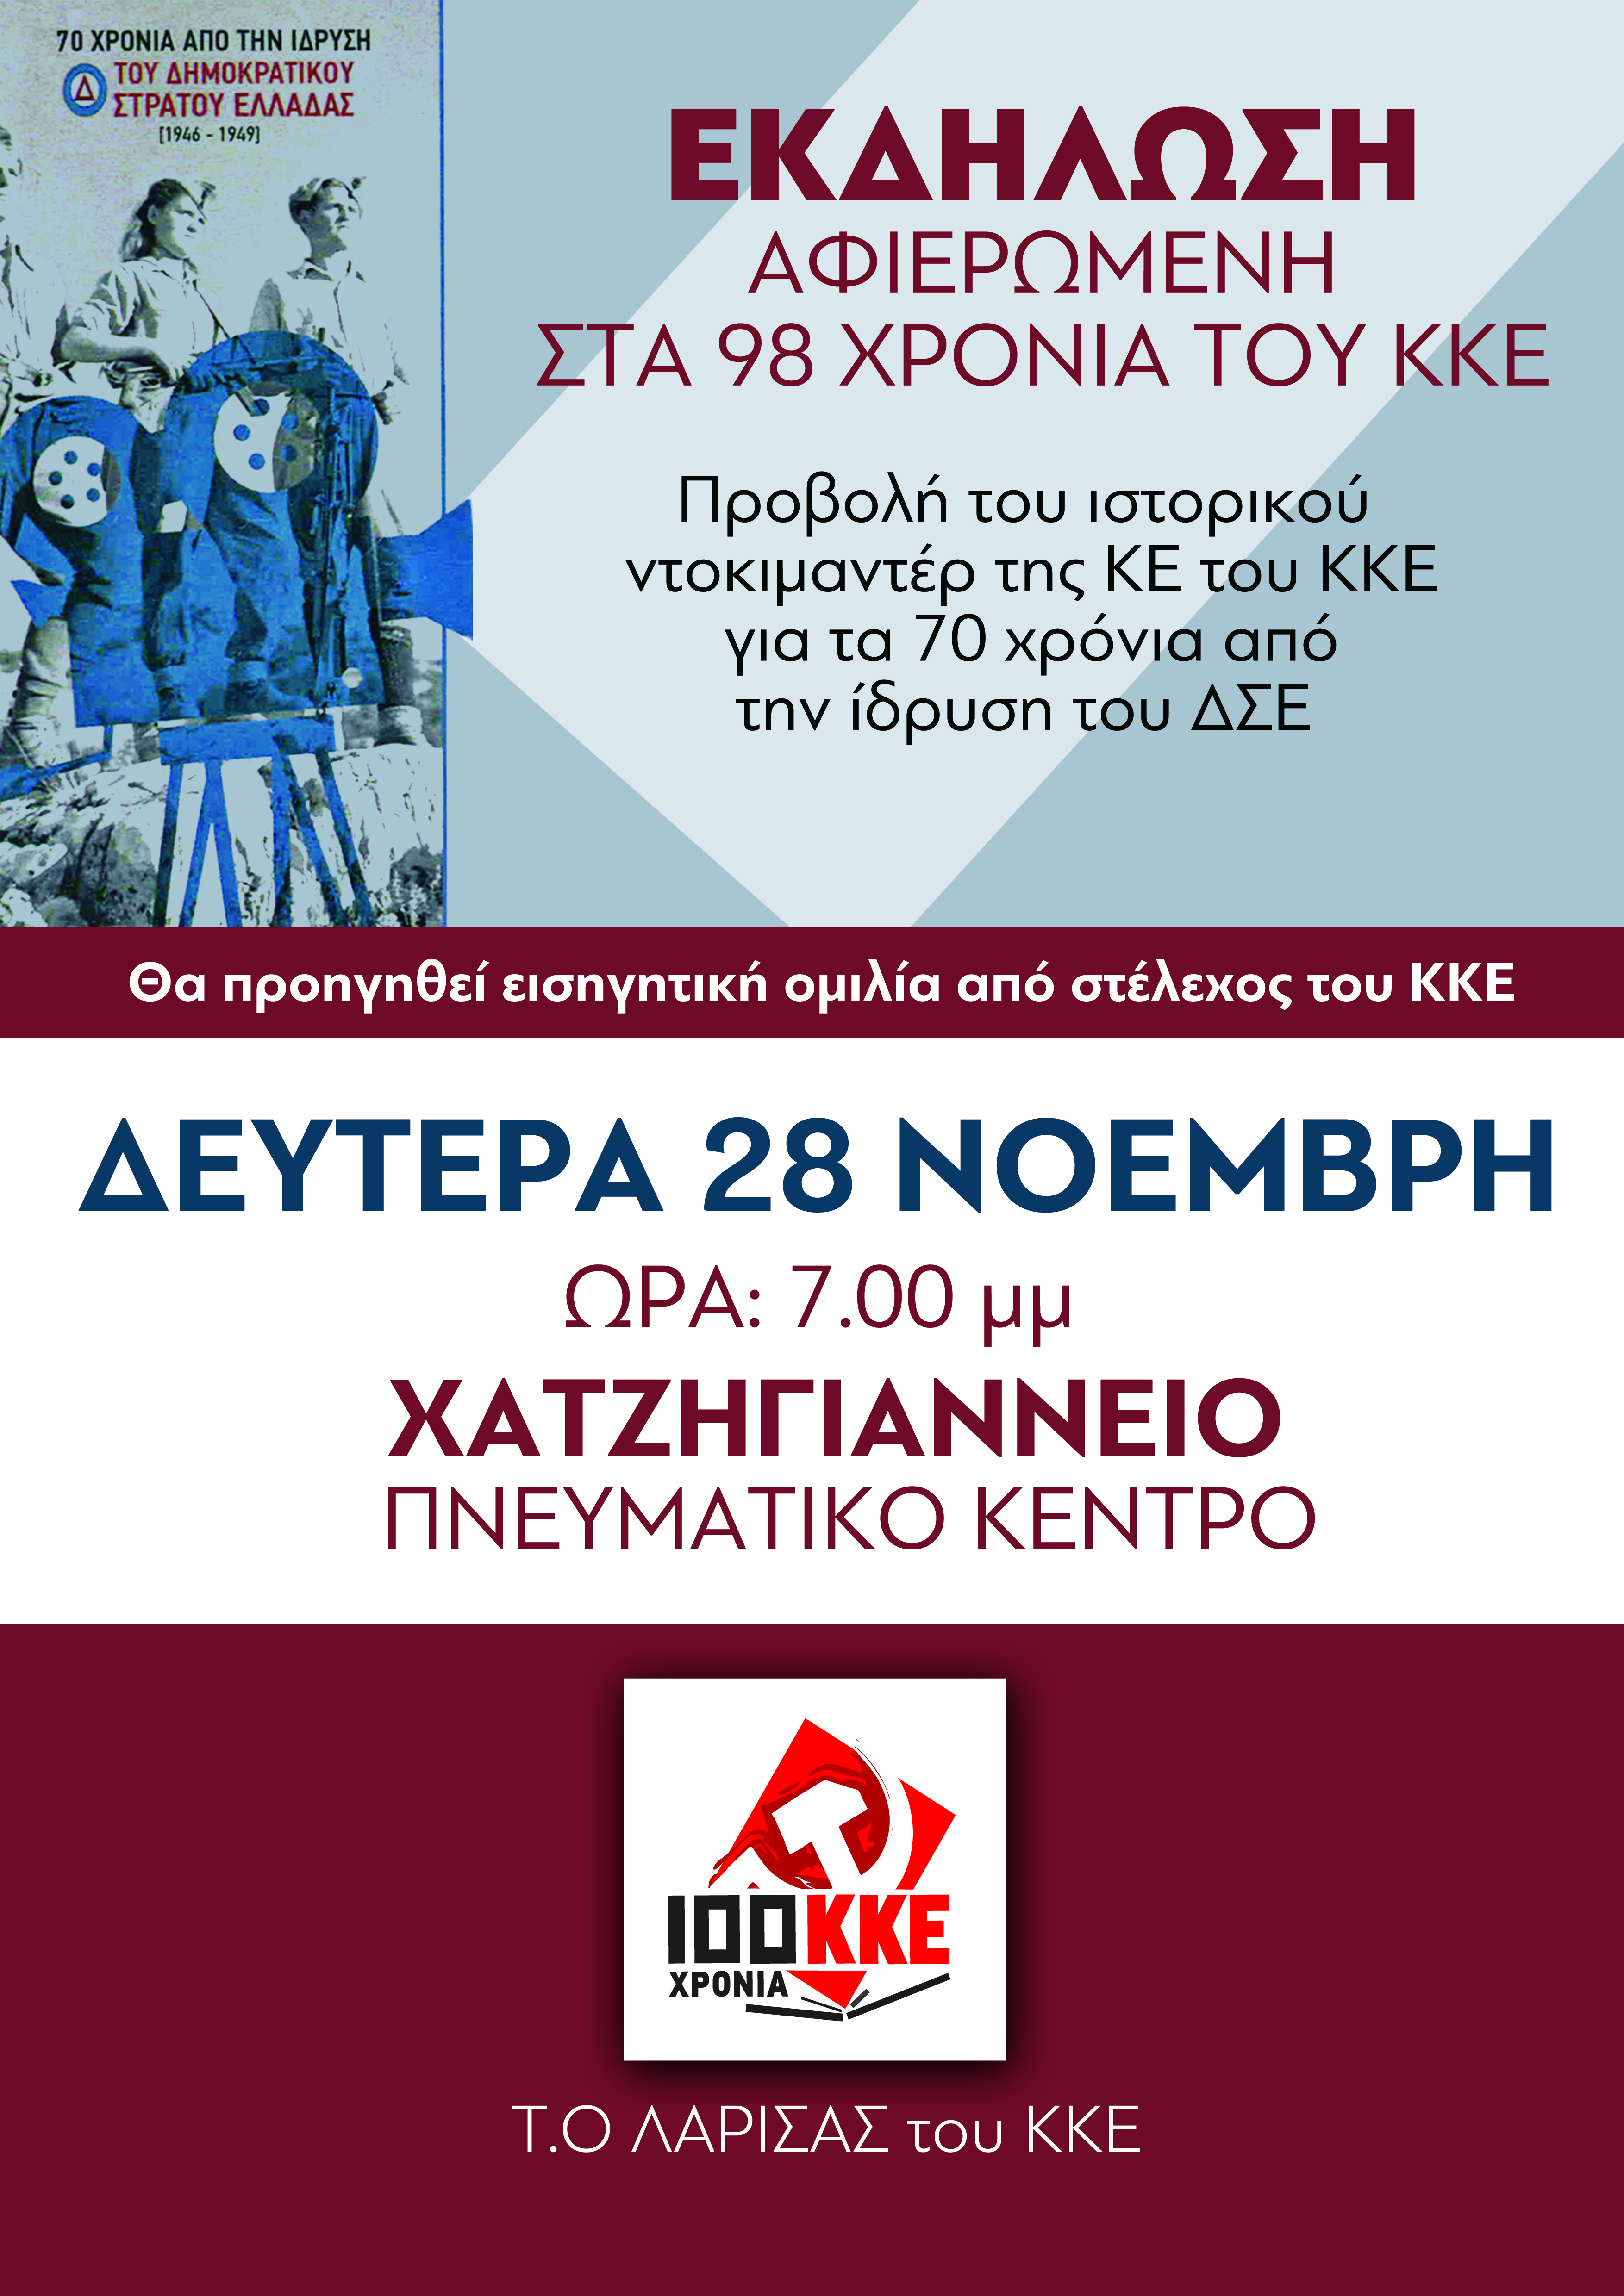 Εκδήλωση για τα 98 χρόνια του ΚΚΕ στο Χατζηγιάννειο